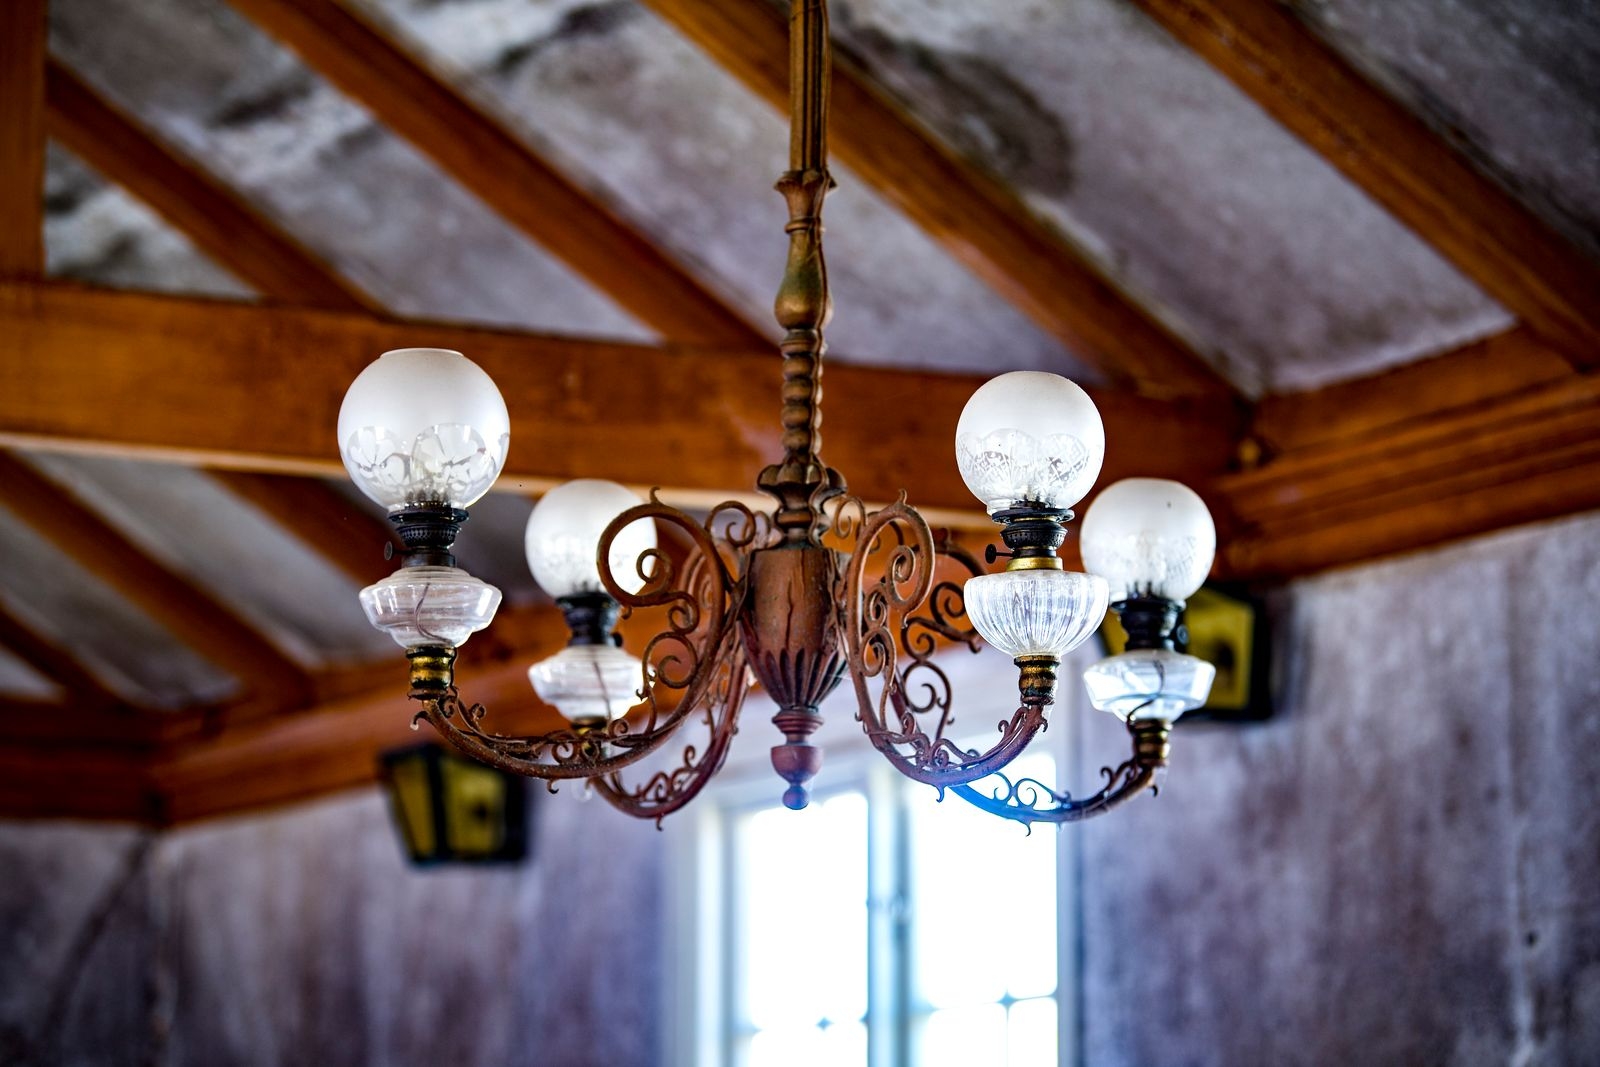 Lampkronorna är bland de få inventarier som fått vara kvar i väntan på beslut om kyrkans framtid.